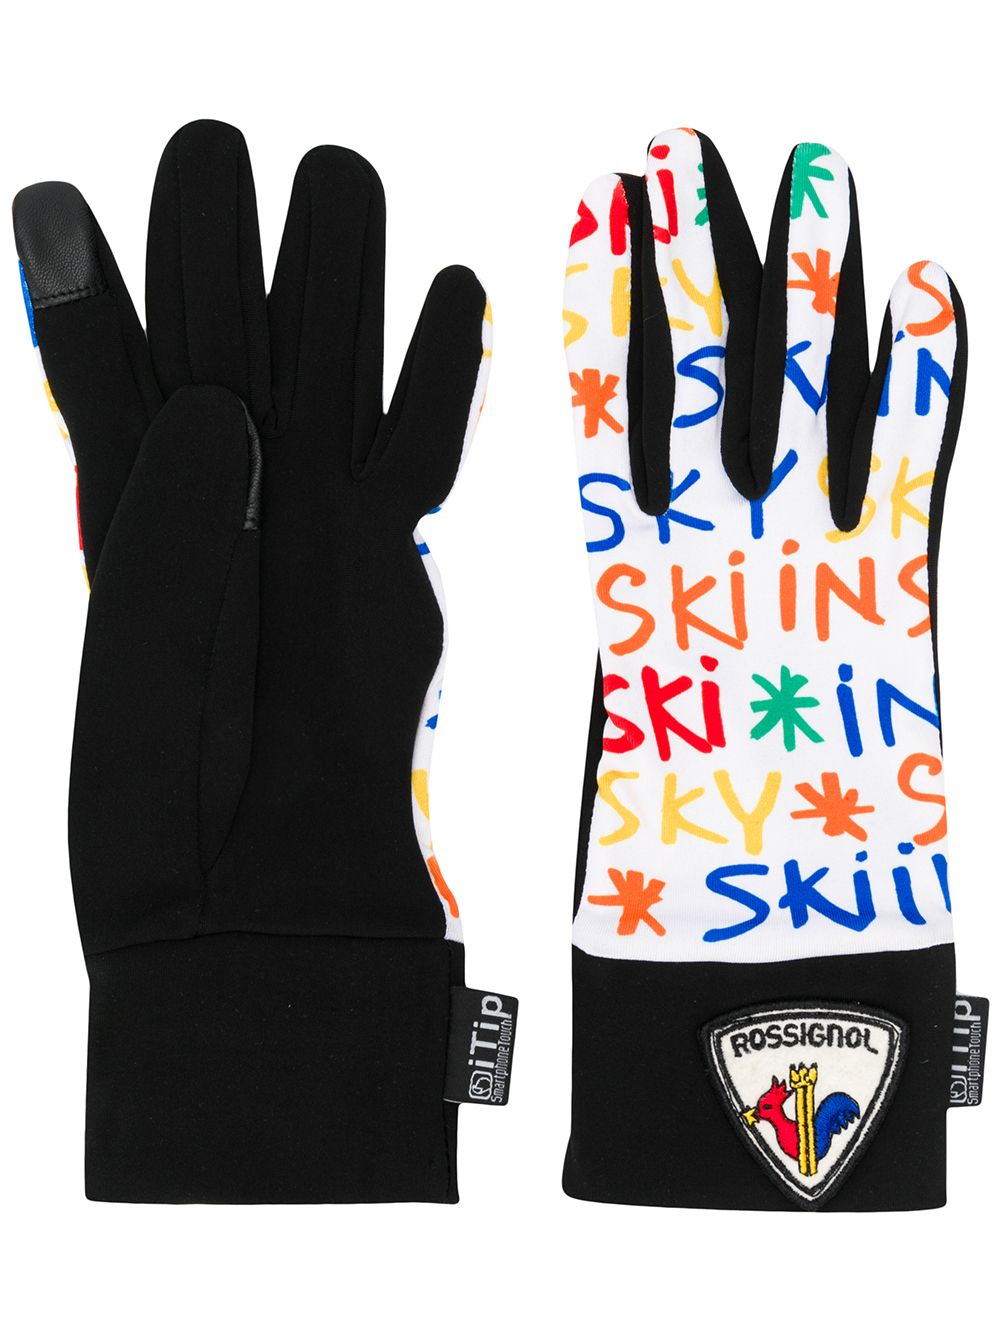 фото Rossignol перчатки с логотипом